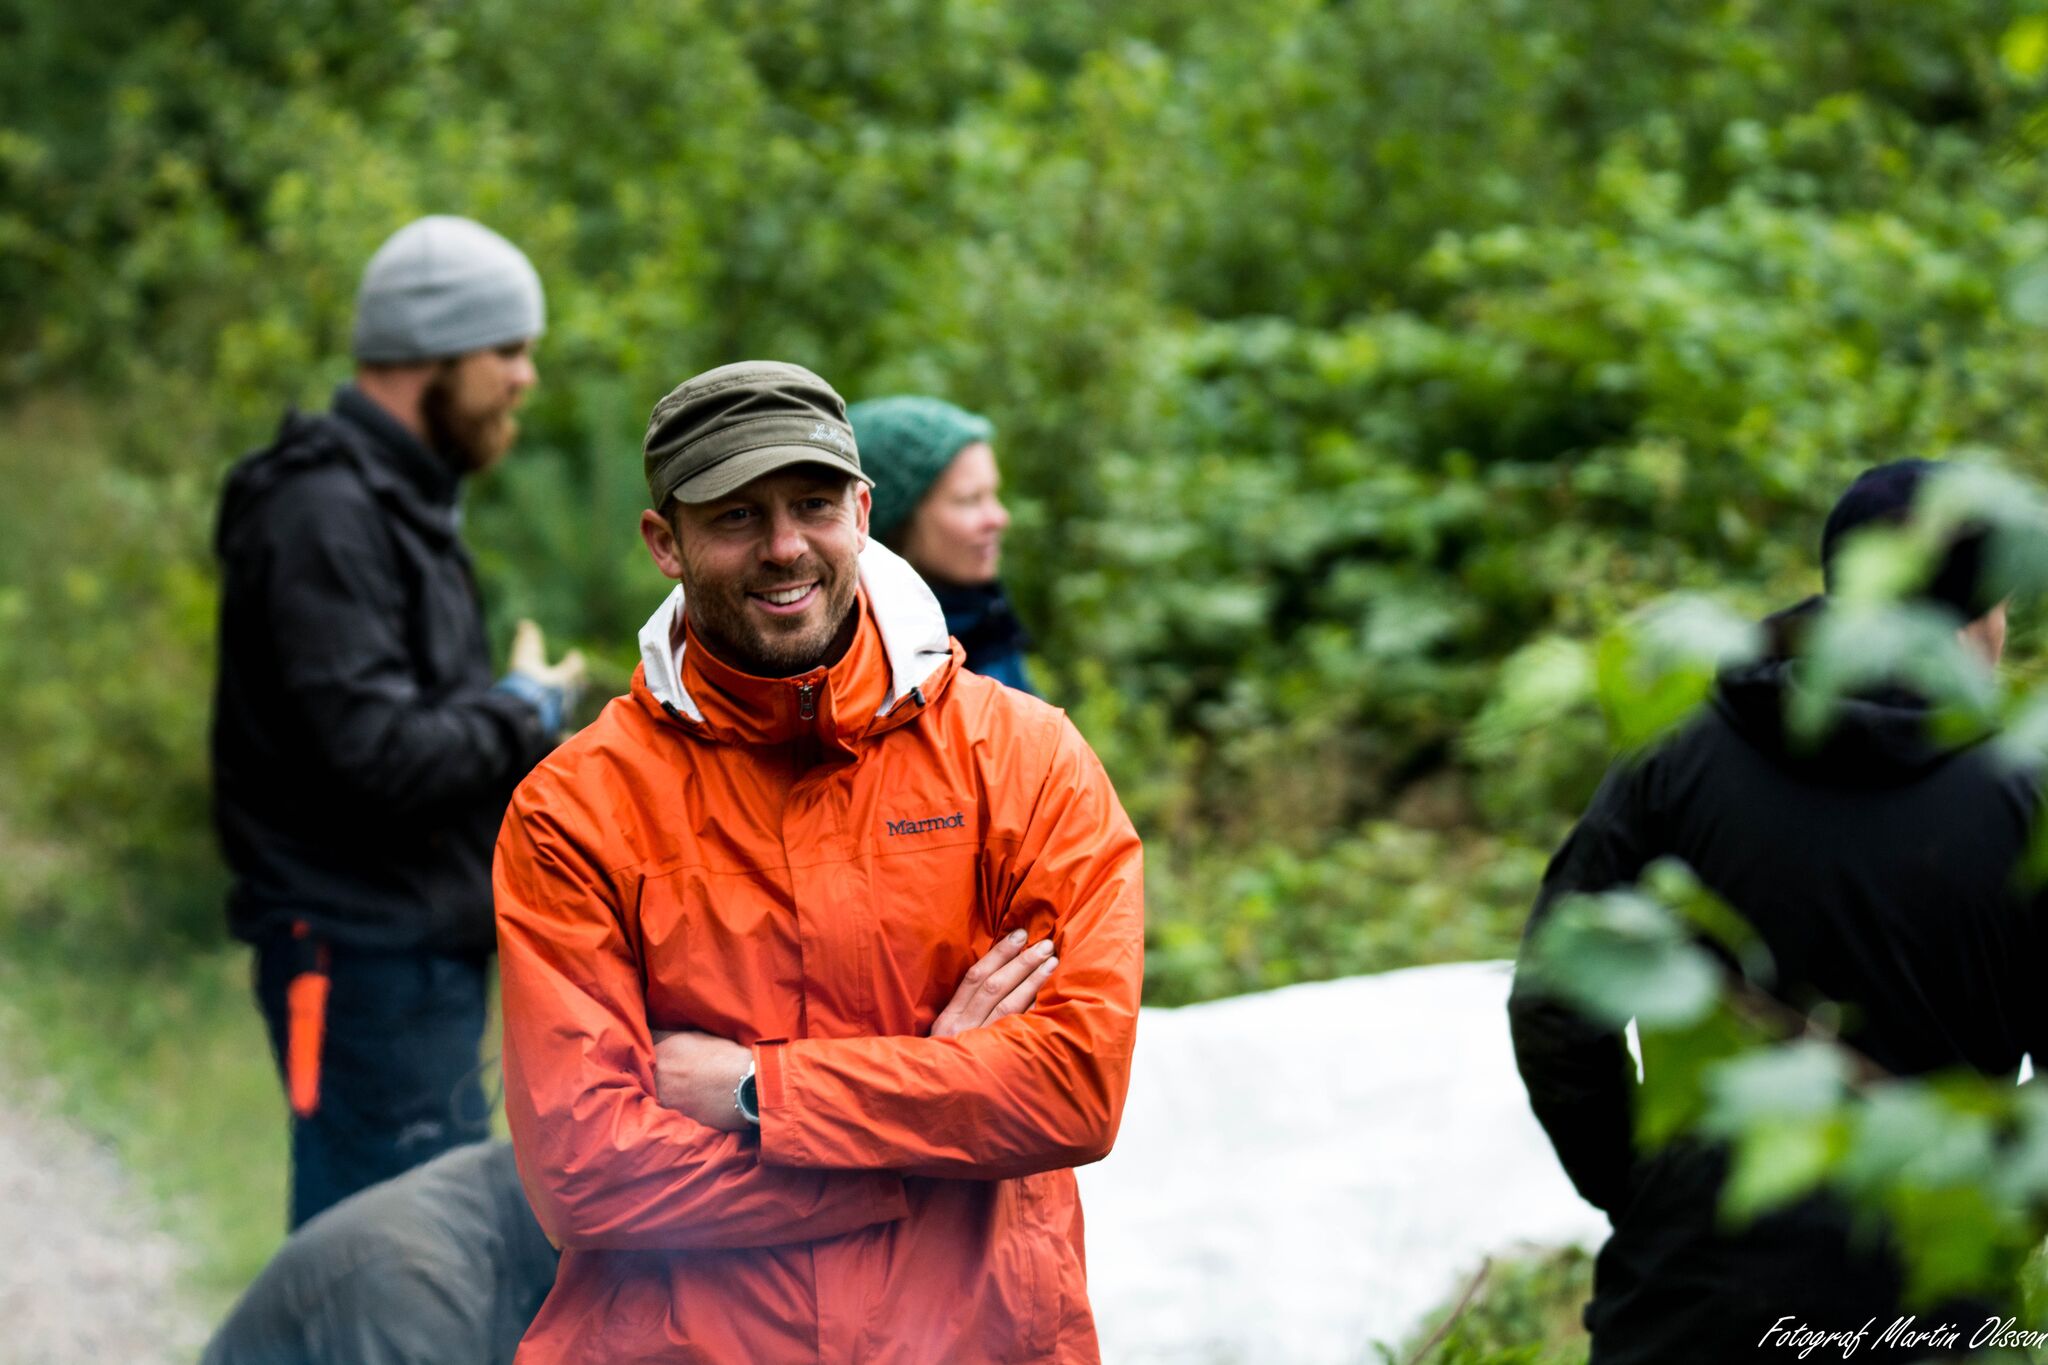 Torbjörn Selin överlevnadsinstruktör med grön keps och orange regnjacka